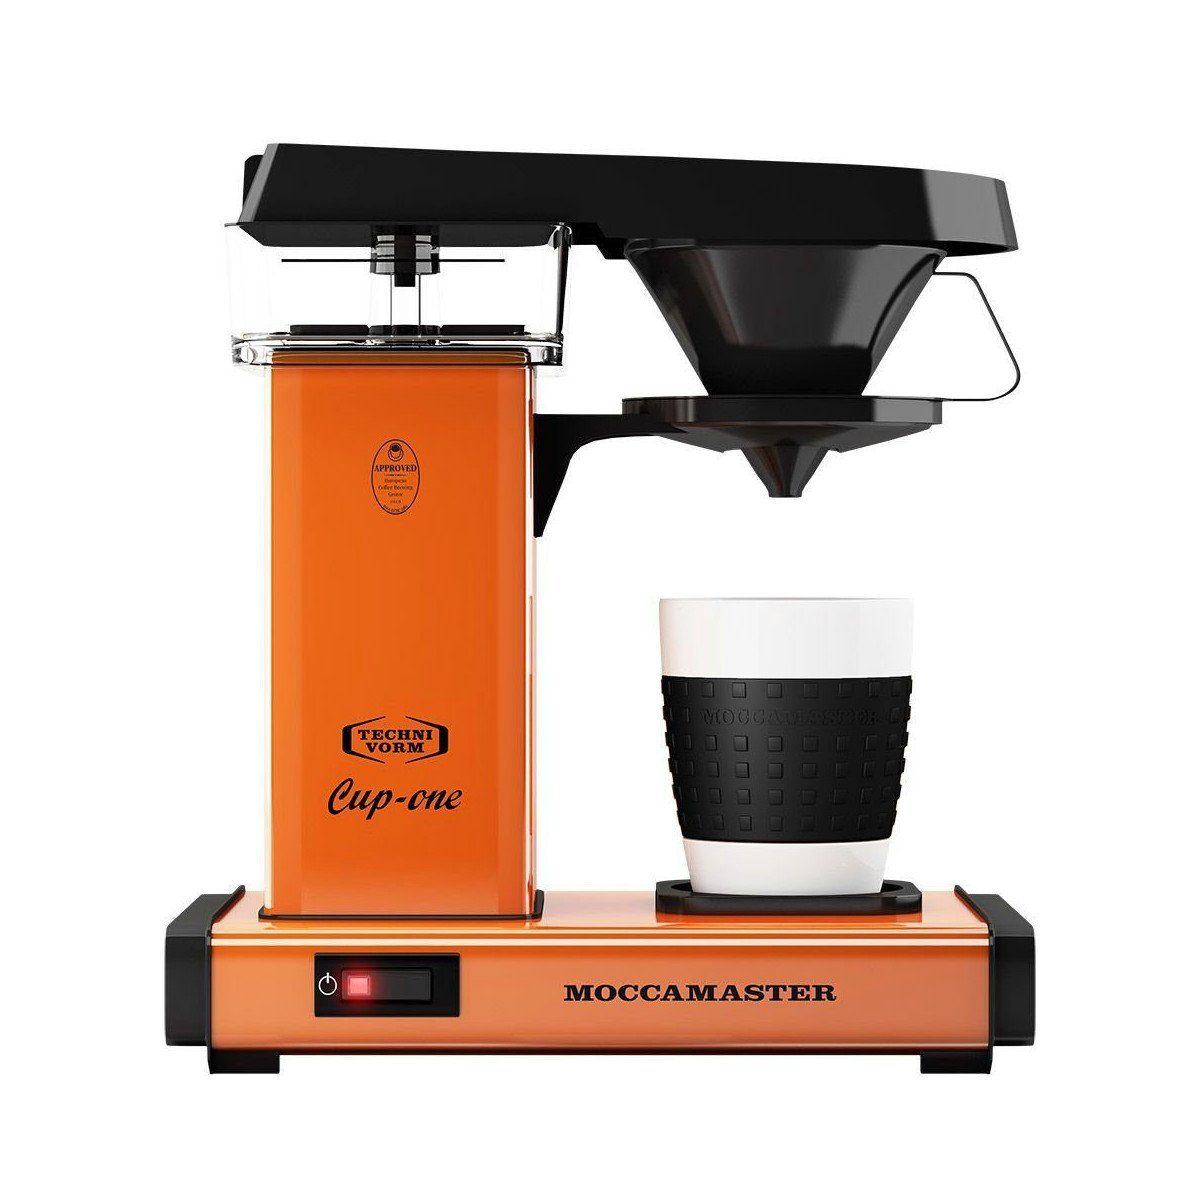 Moccamaster Filterkaffeemaschine Cup-one, 1, Brühtemperatur 92-96 ° C und Kaffeetemperatur 80-85 ° C Orange